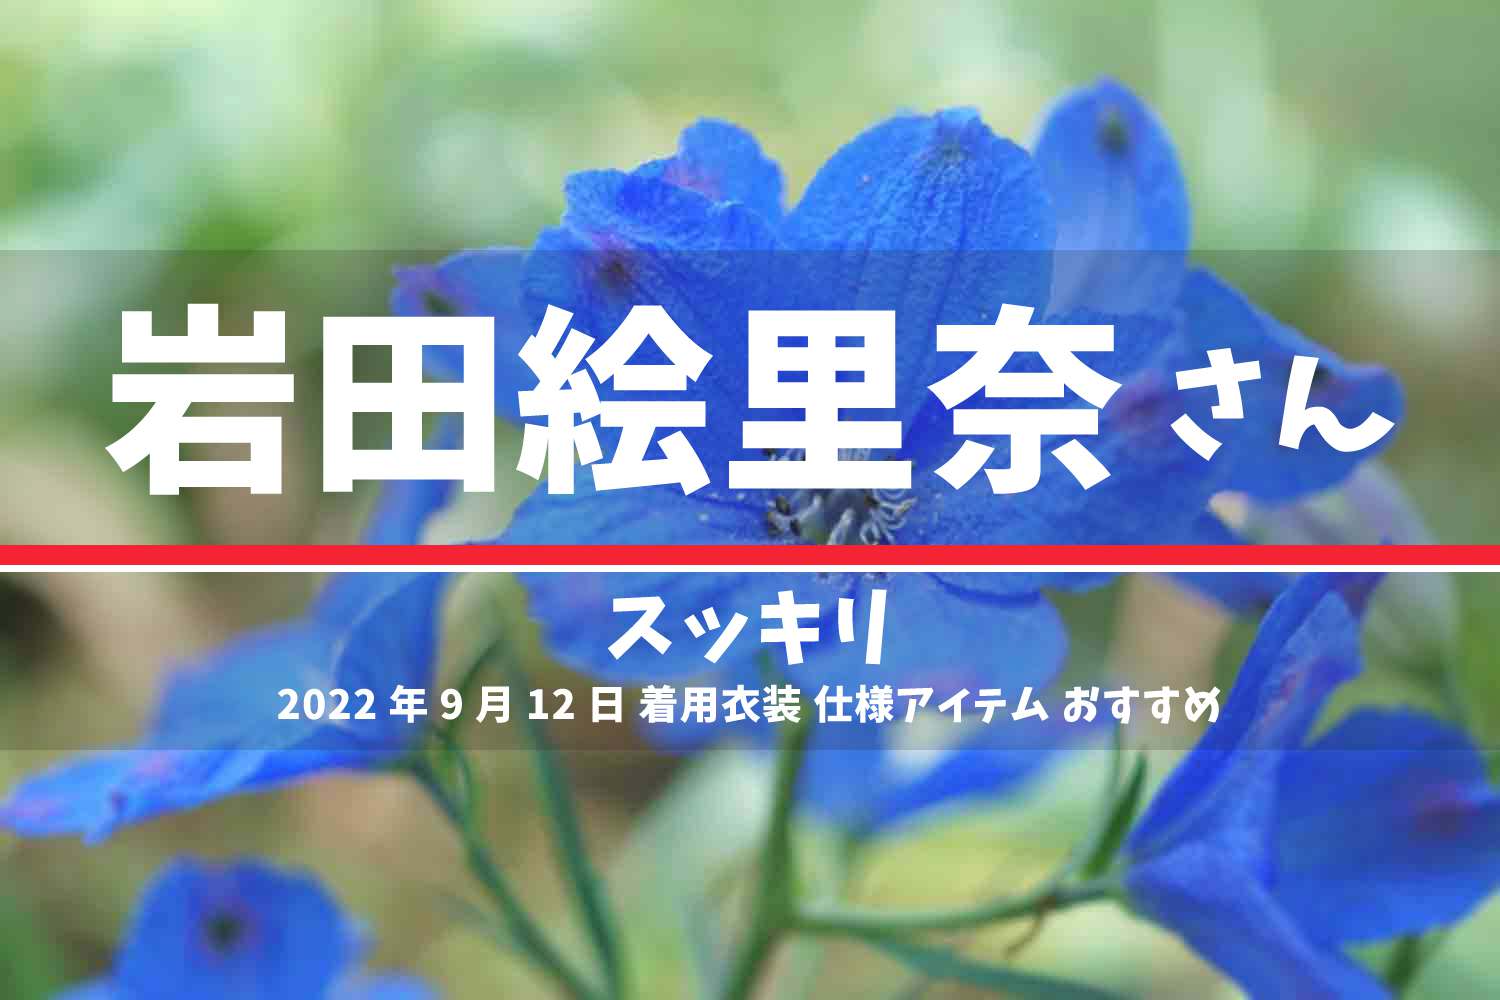 スッキリ 岩田絵里奈さん 番組 衣装 2022年9月12日放送